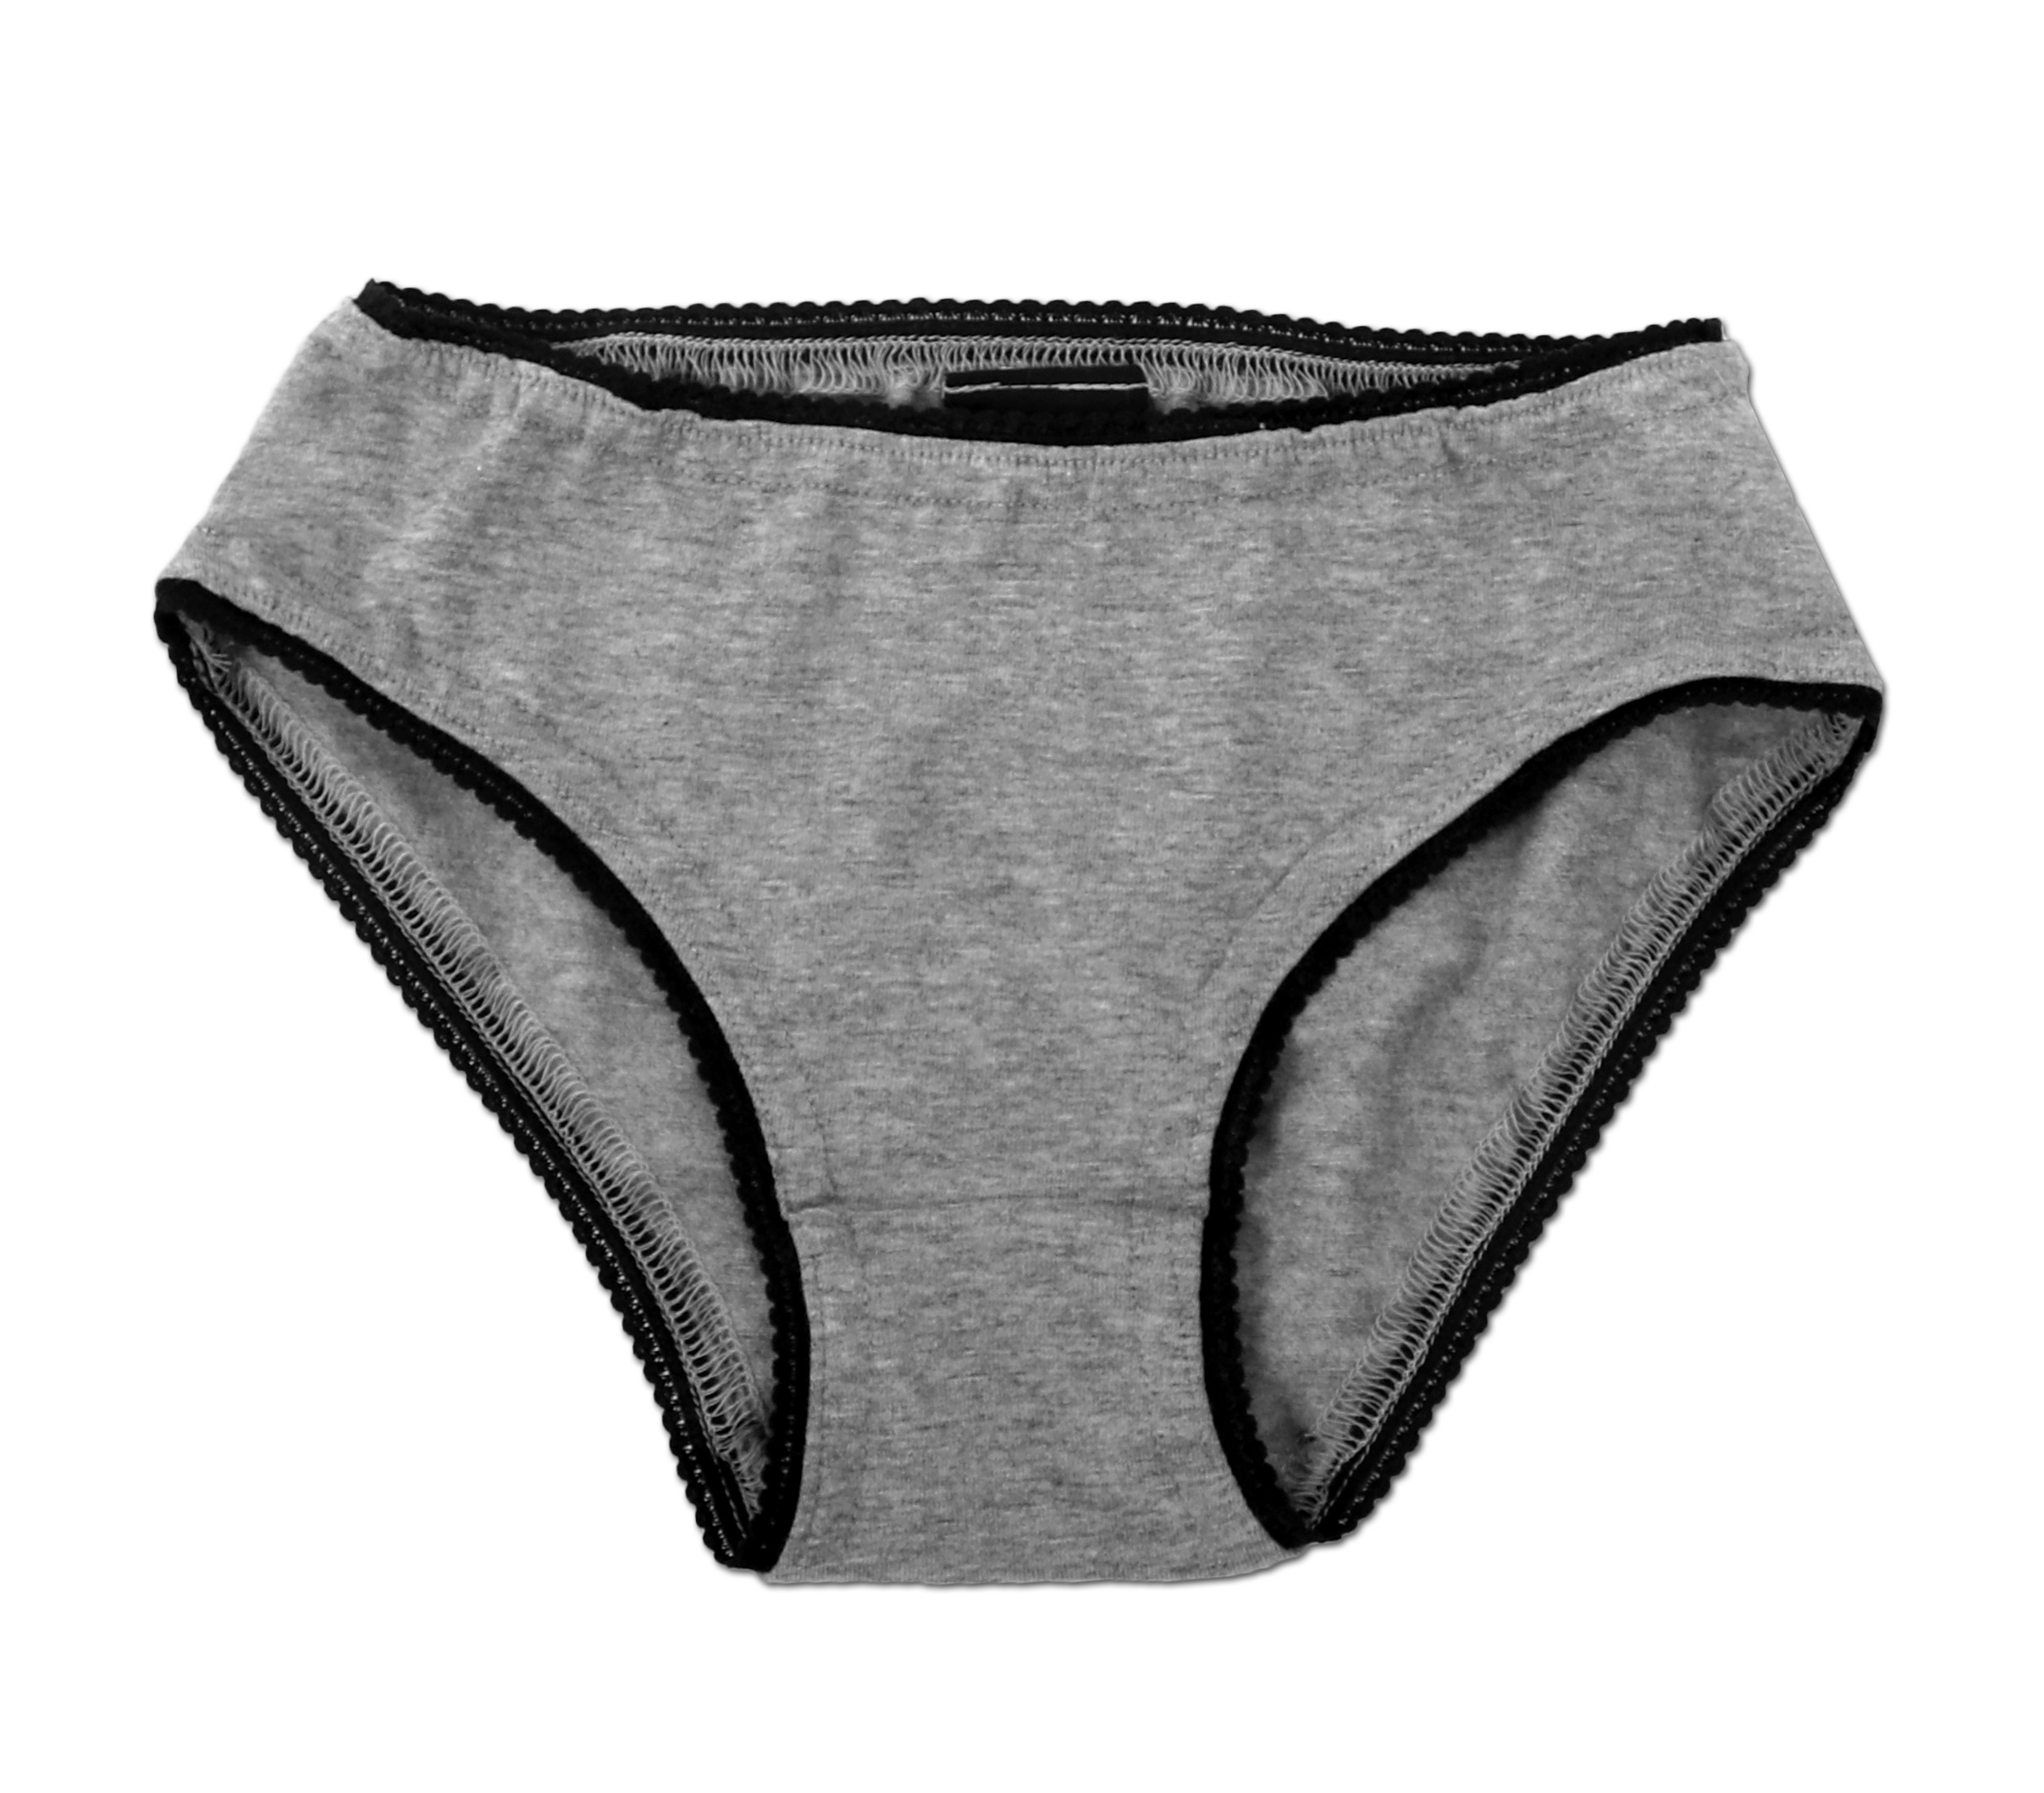 Grey panties